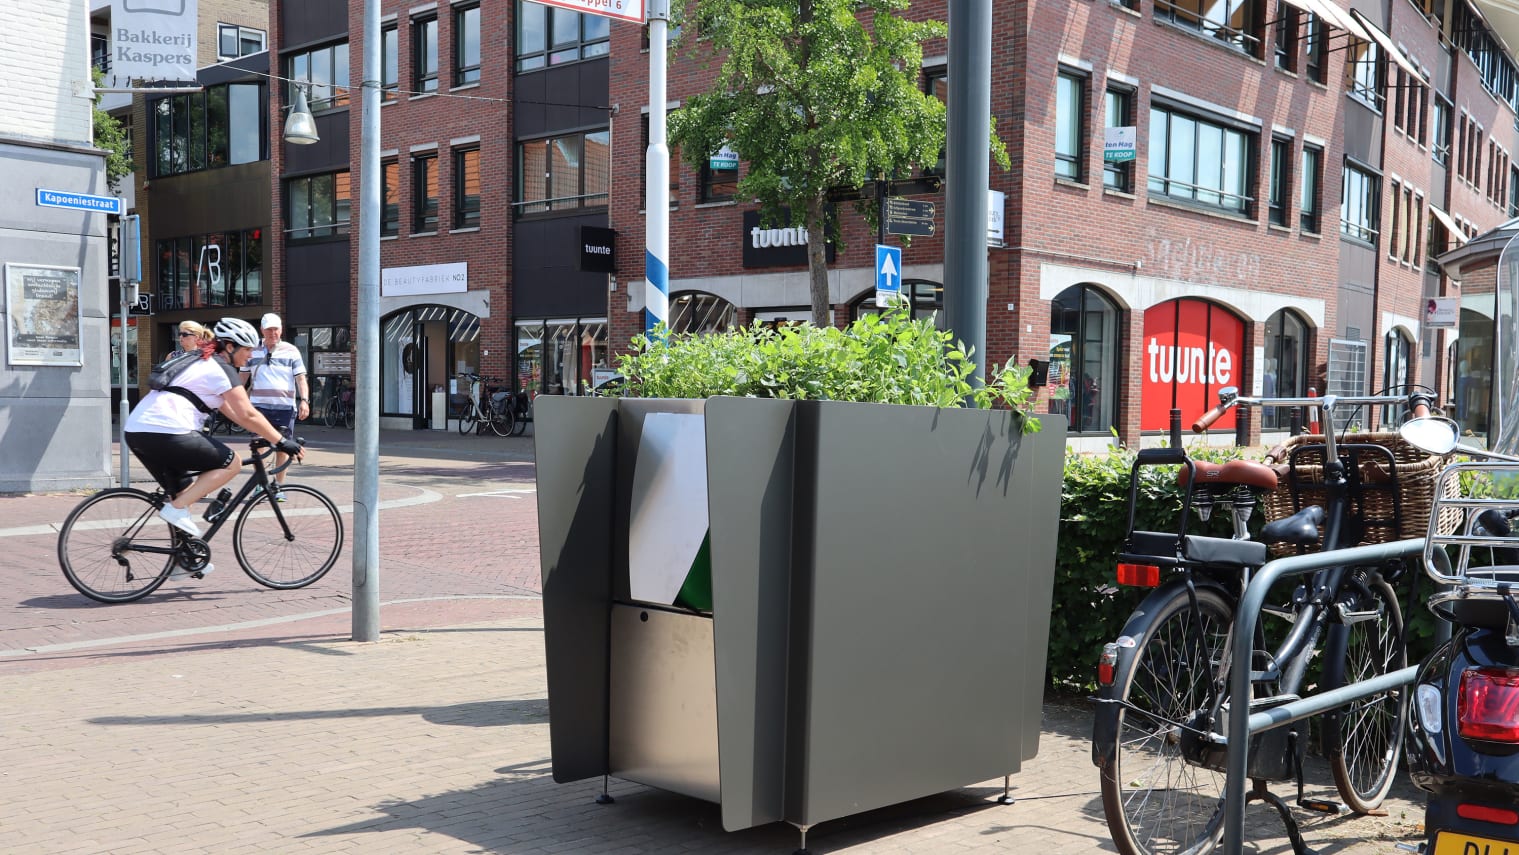 这些花盆状的小便池是阿姆斯特丹解决“野外撒尿”问题的方法